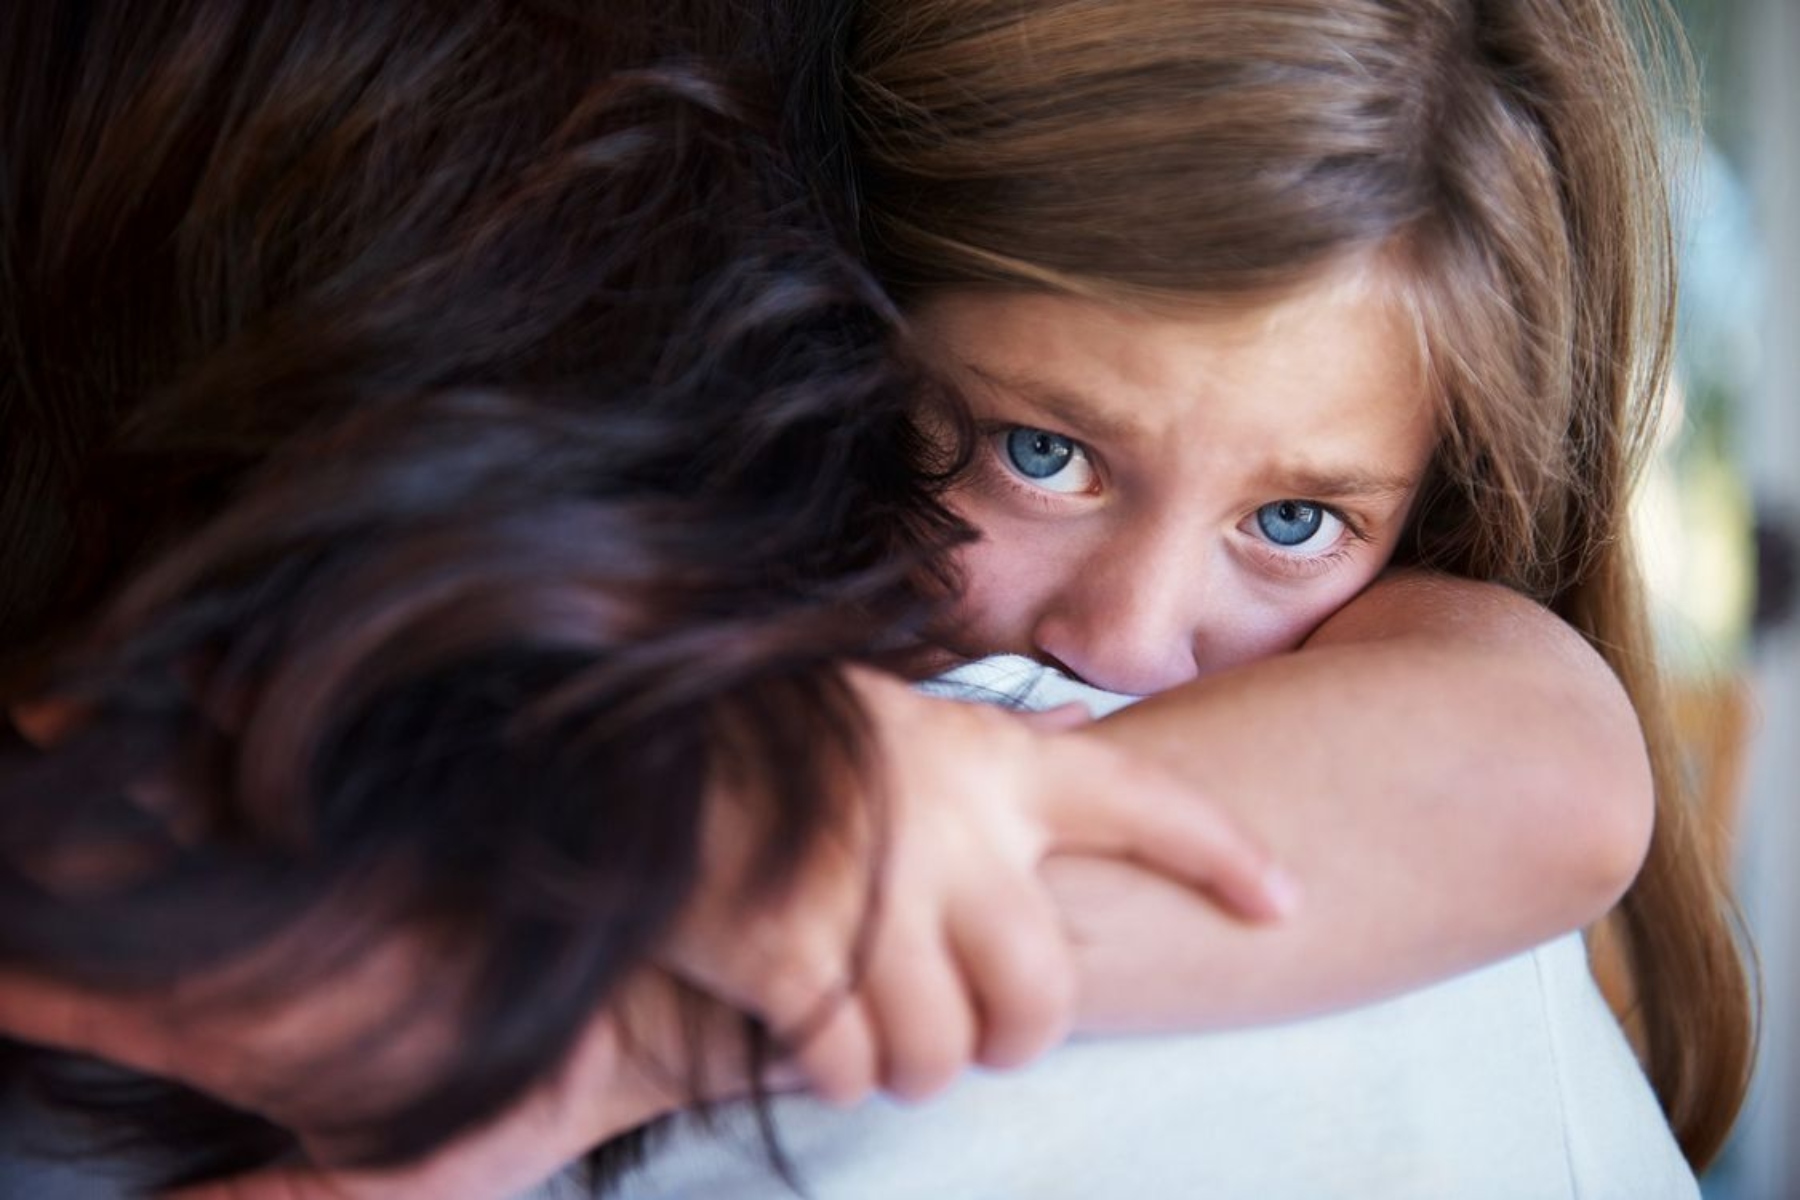 Φόβος: Ποιοι παράγοντες επηρεάζουν την εκμάθηση του φόβου από τα παιδιά;